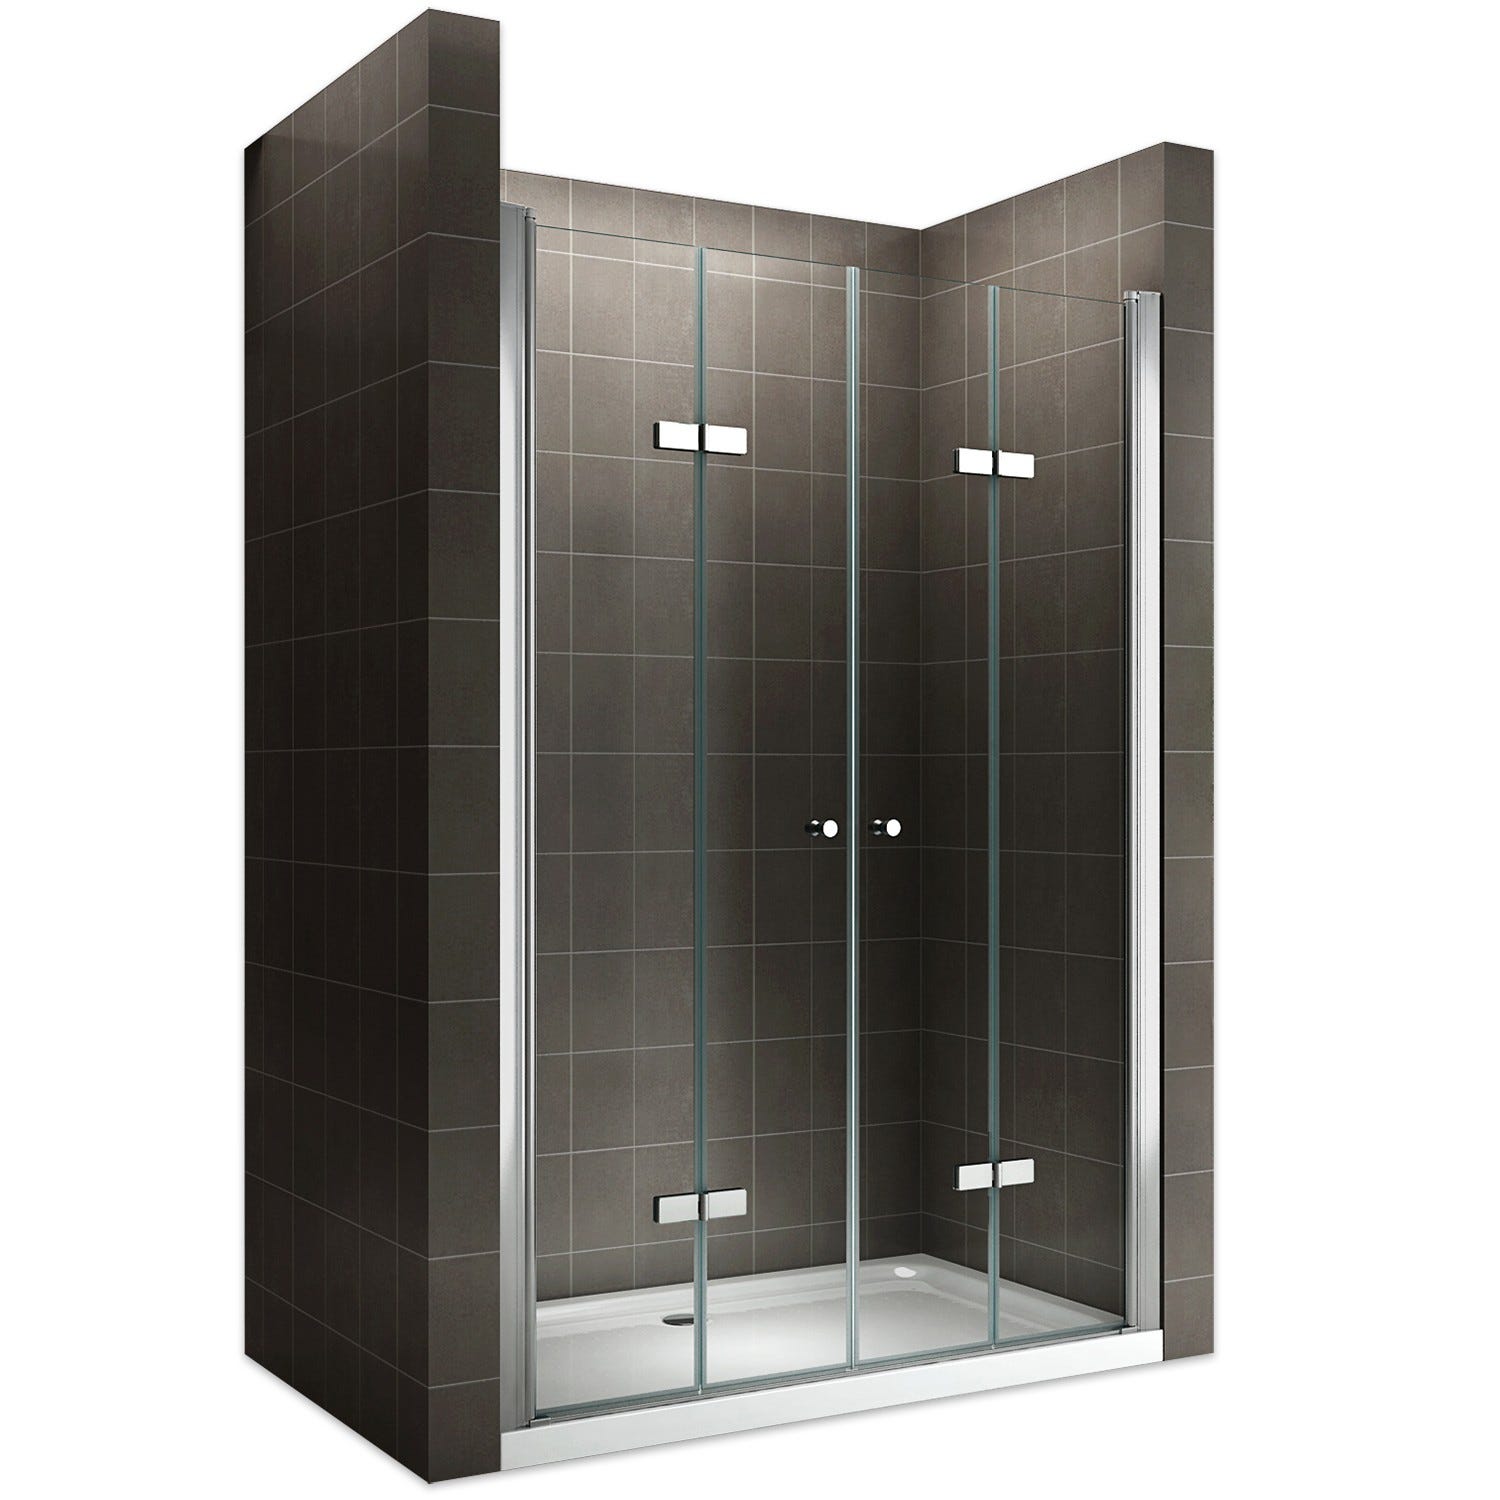 EMMY Porte de douche pliante pivotante H 185 cm largeur réglable 92 à 96 cm verre transparent 0